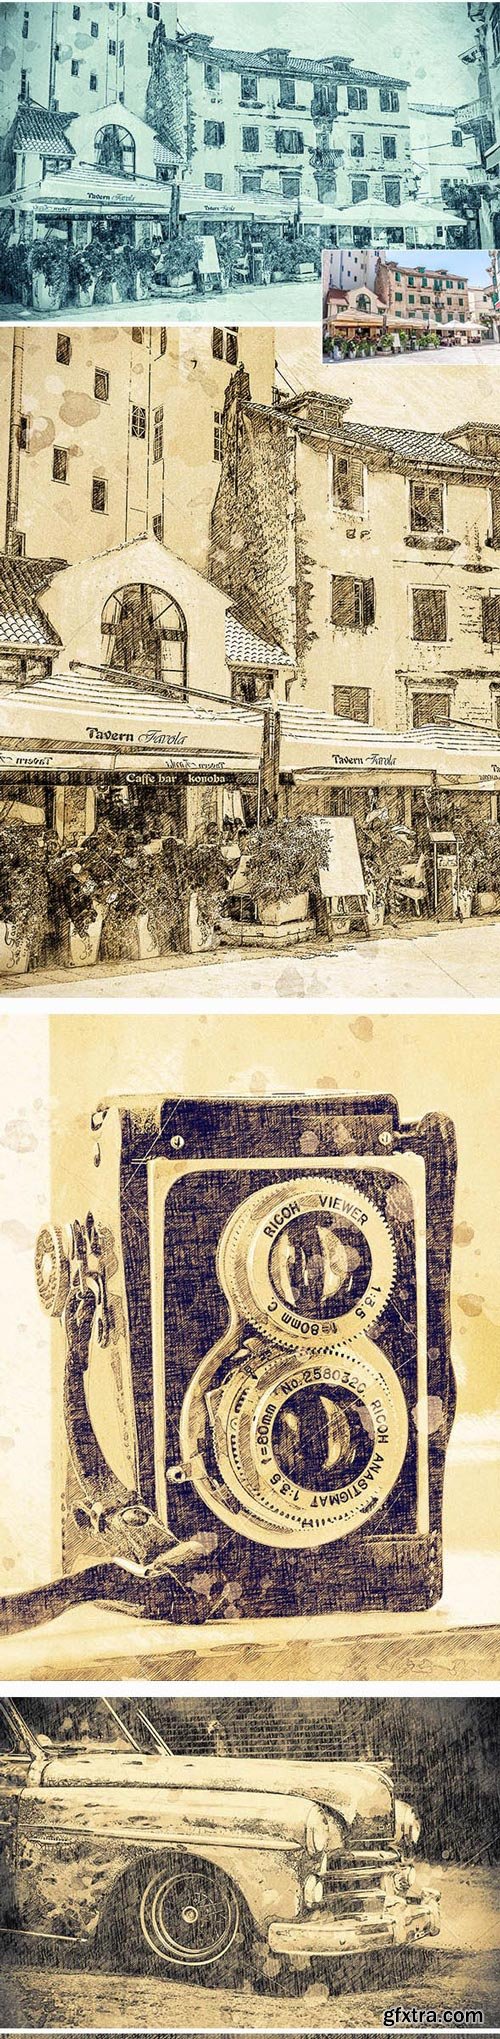 GraphicRiver - Vintage Sketch Photoshop Action - 18128171